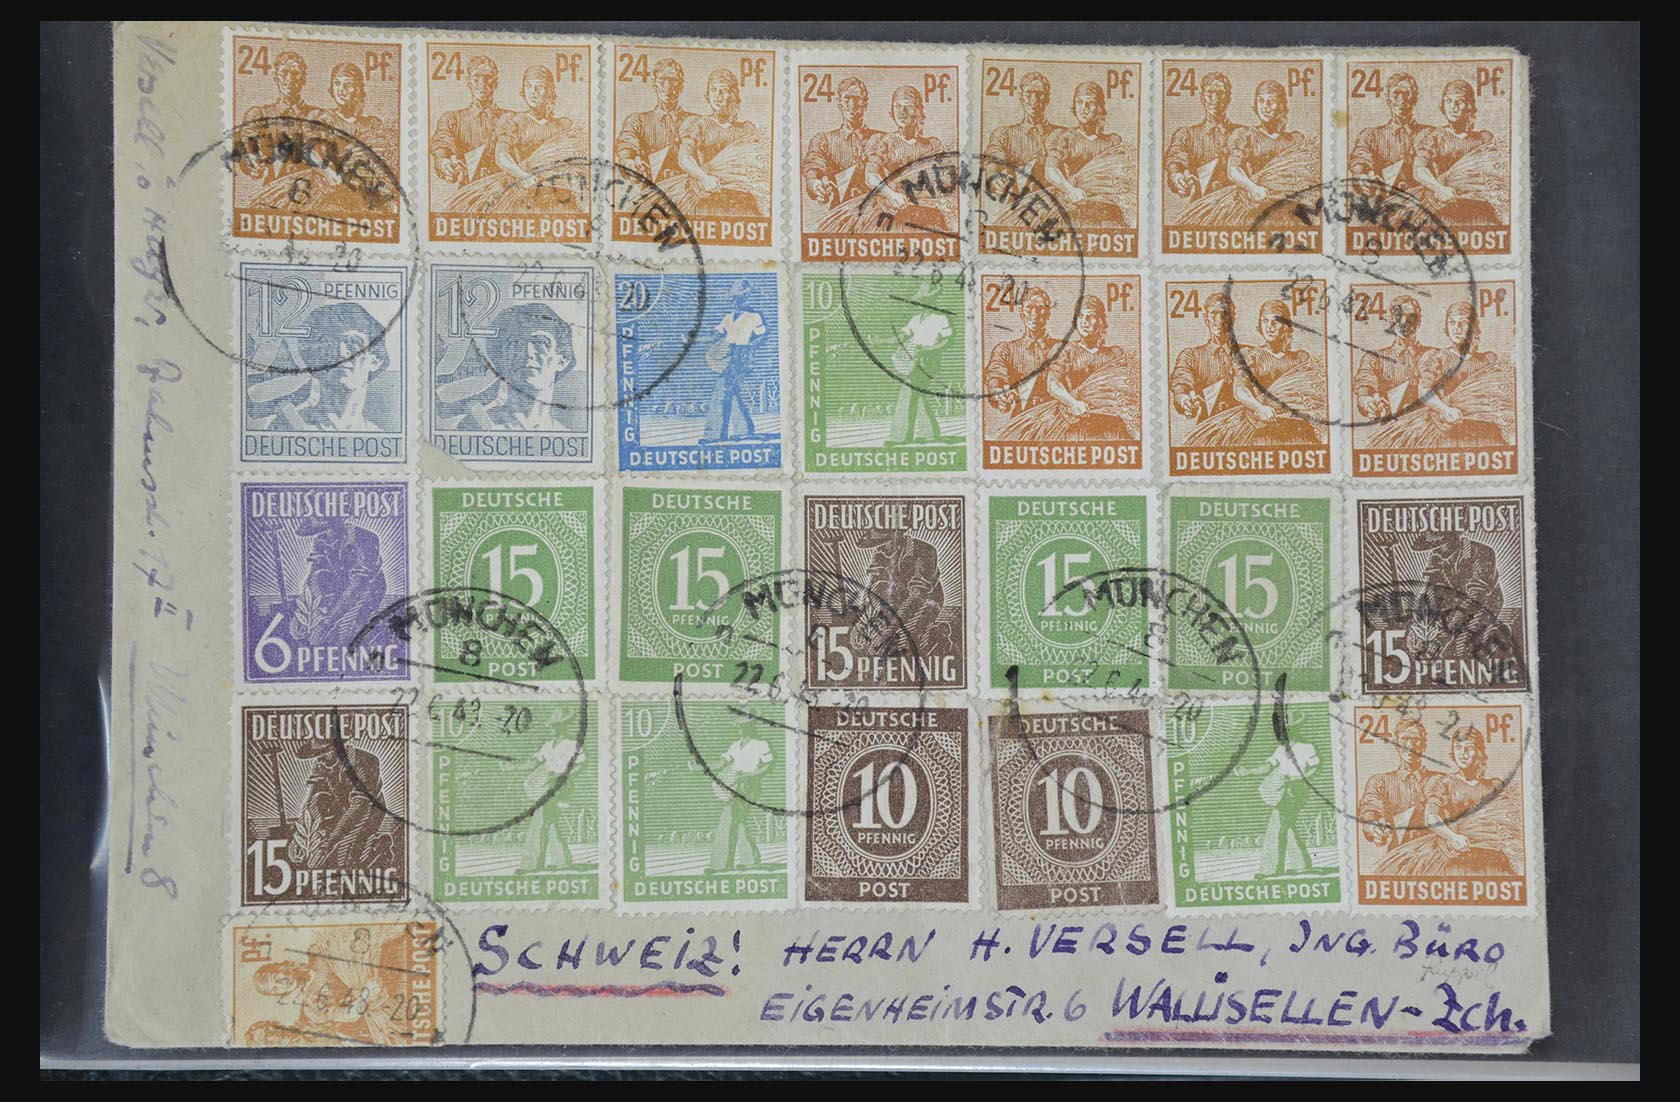 31581 029 - 31581 Duitsland brieven en FDC's 1945-1981.